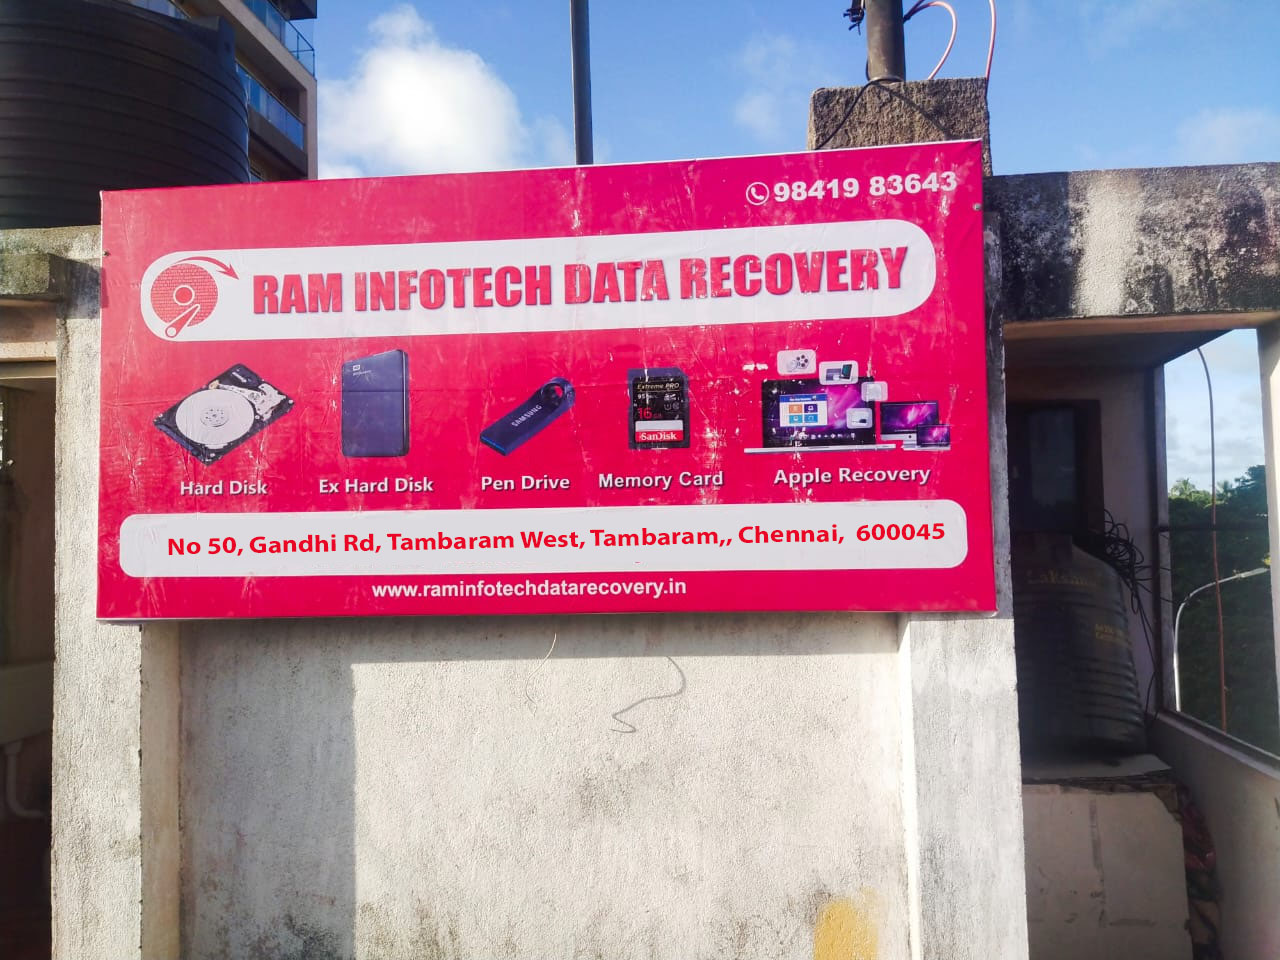 Raminfotech Data Recovery in tambaram in Chennai